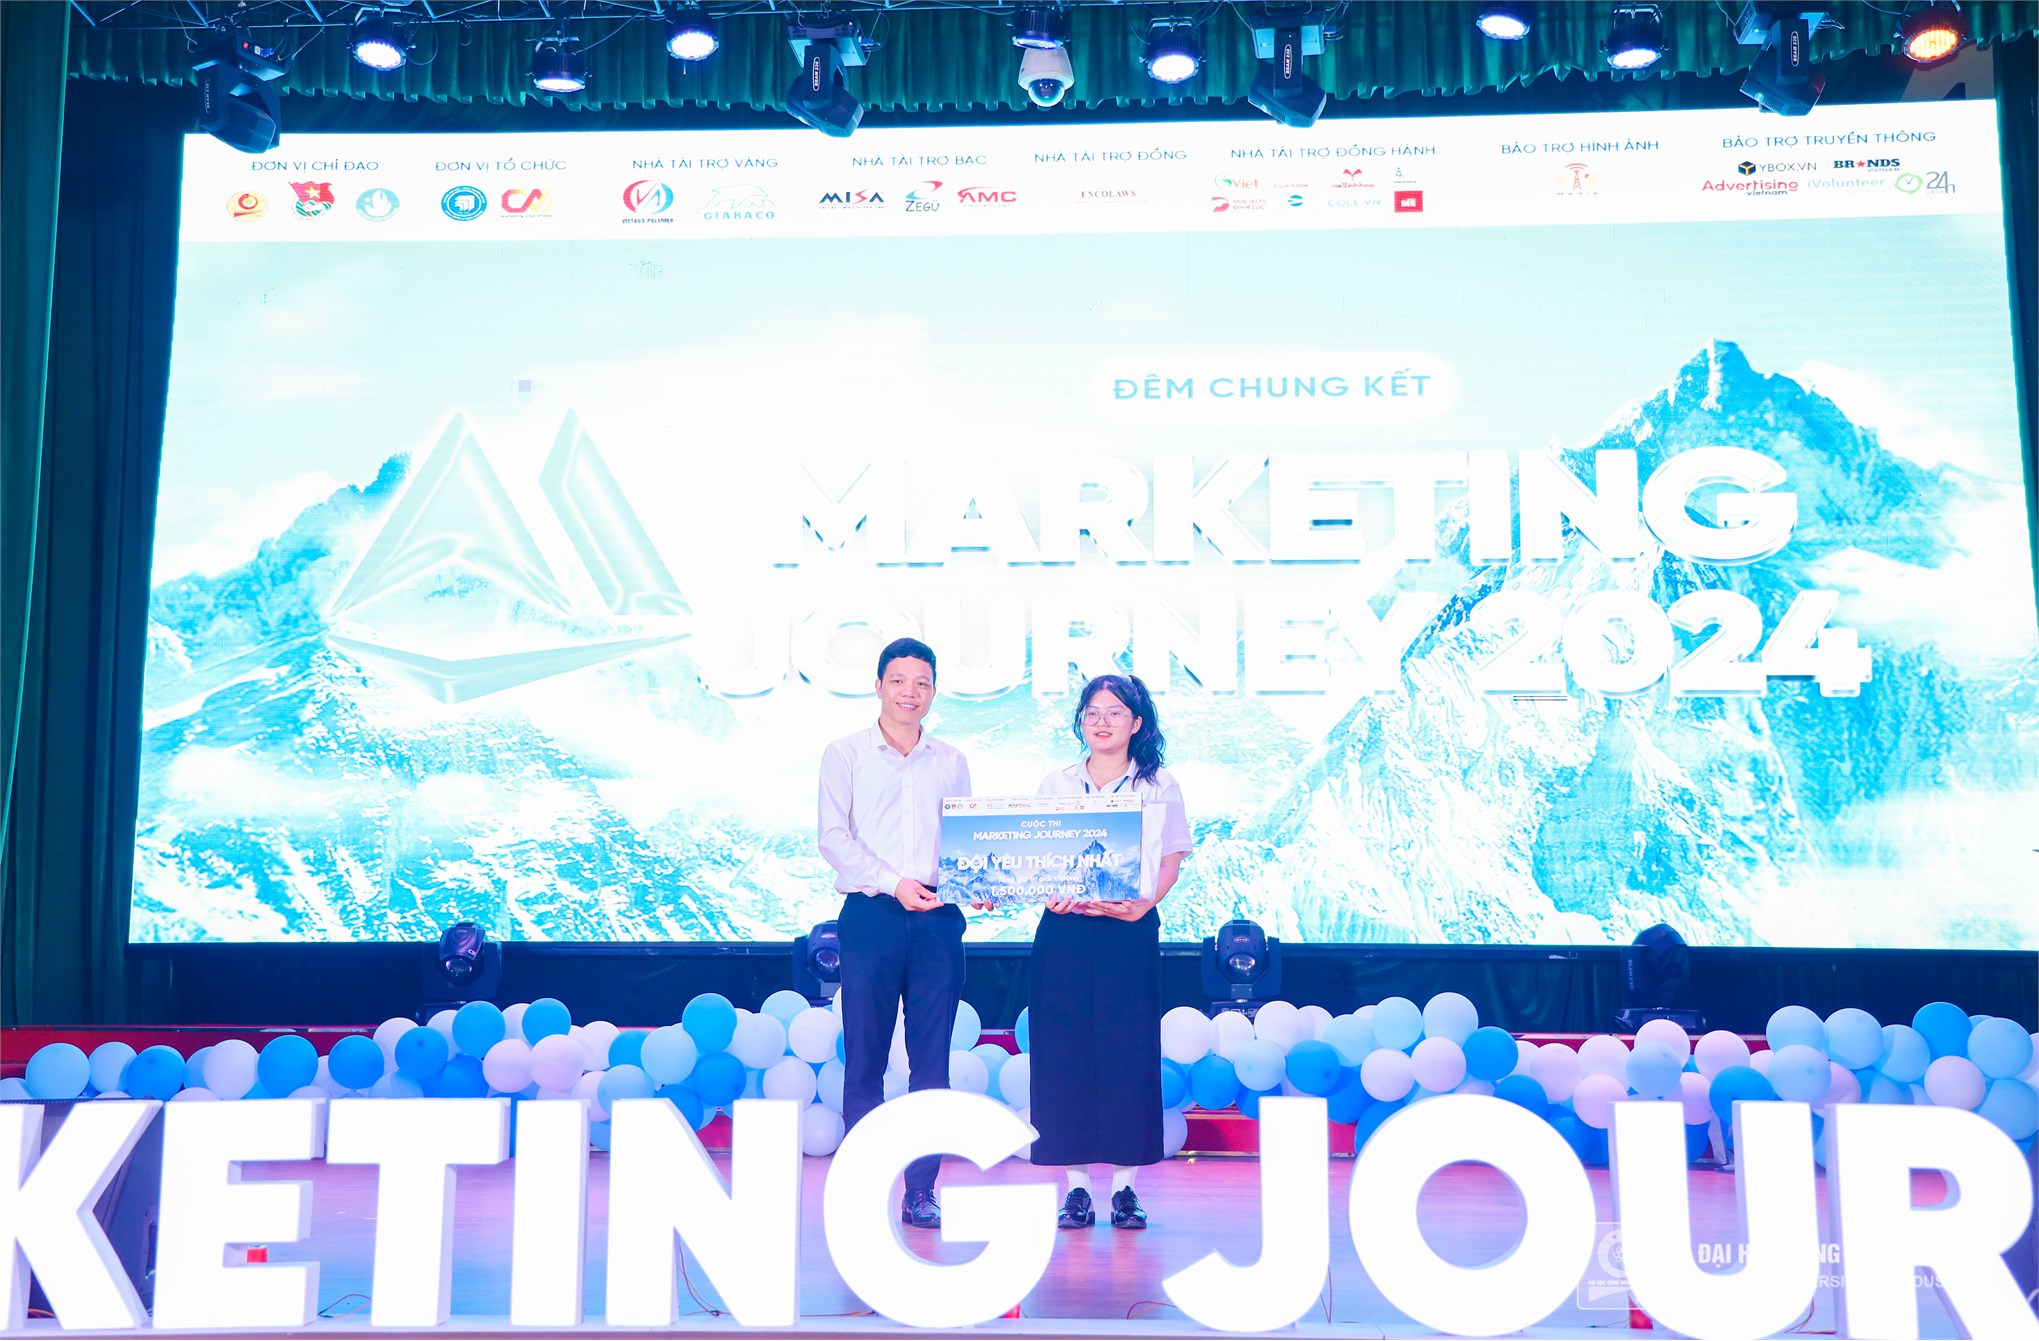 Chung kết Marketing Journey 2024: Sân chơi thực chiến cho những marketer trẻ tài năng